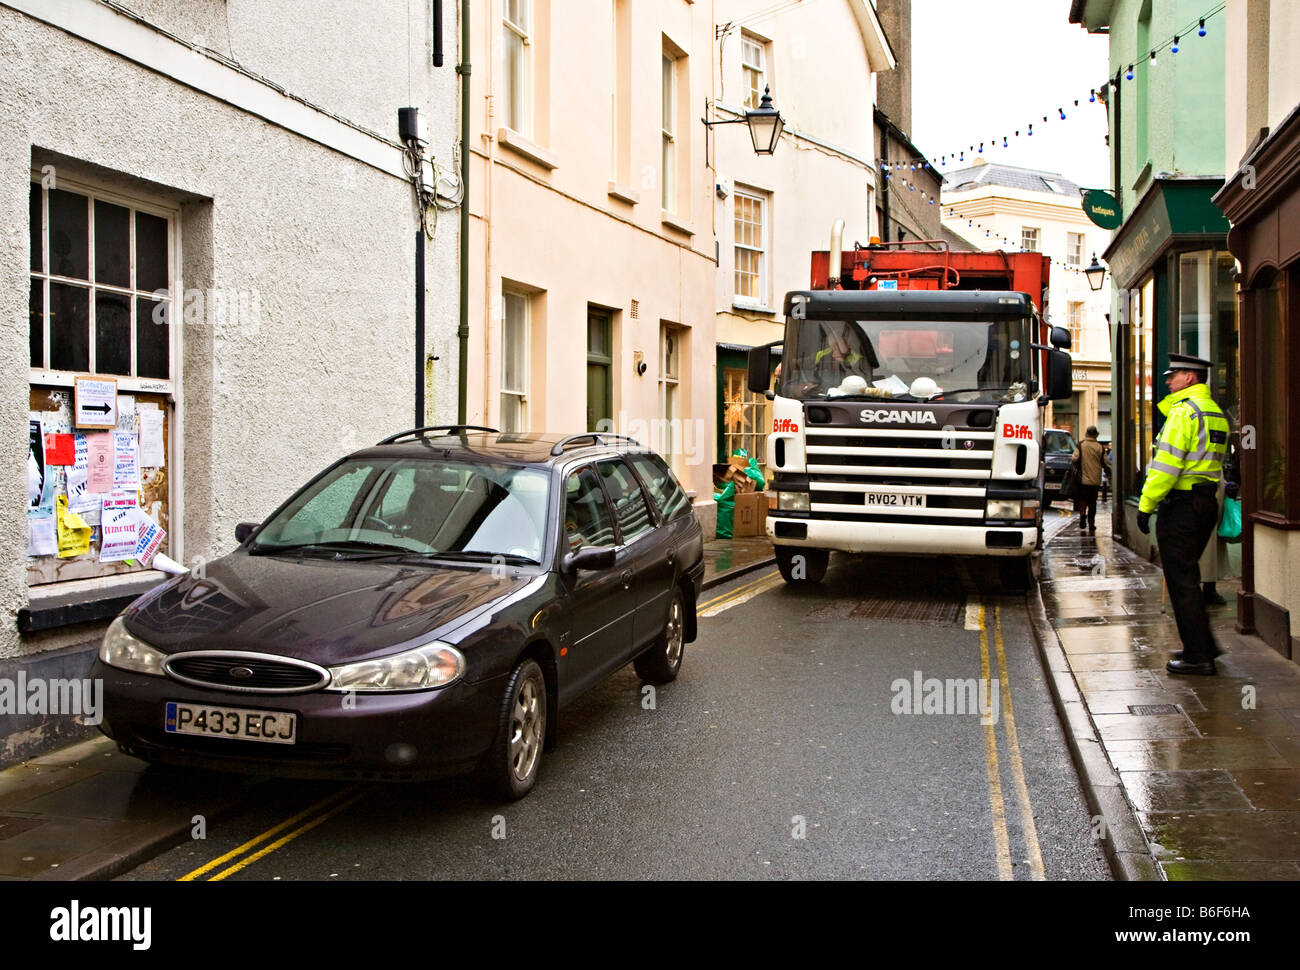 Auto geparkt auf doppelte gelbe Linien in keine Wartebereich blockieren Straße mit der Polizei, die Teilnahme an Brecon Wales UK Stockfoto